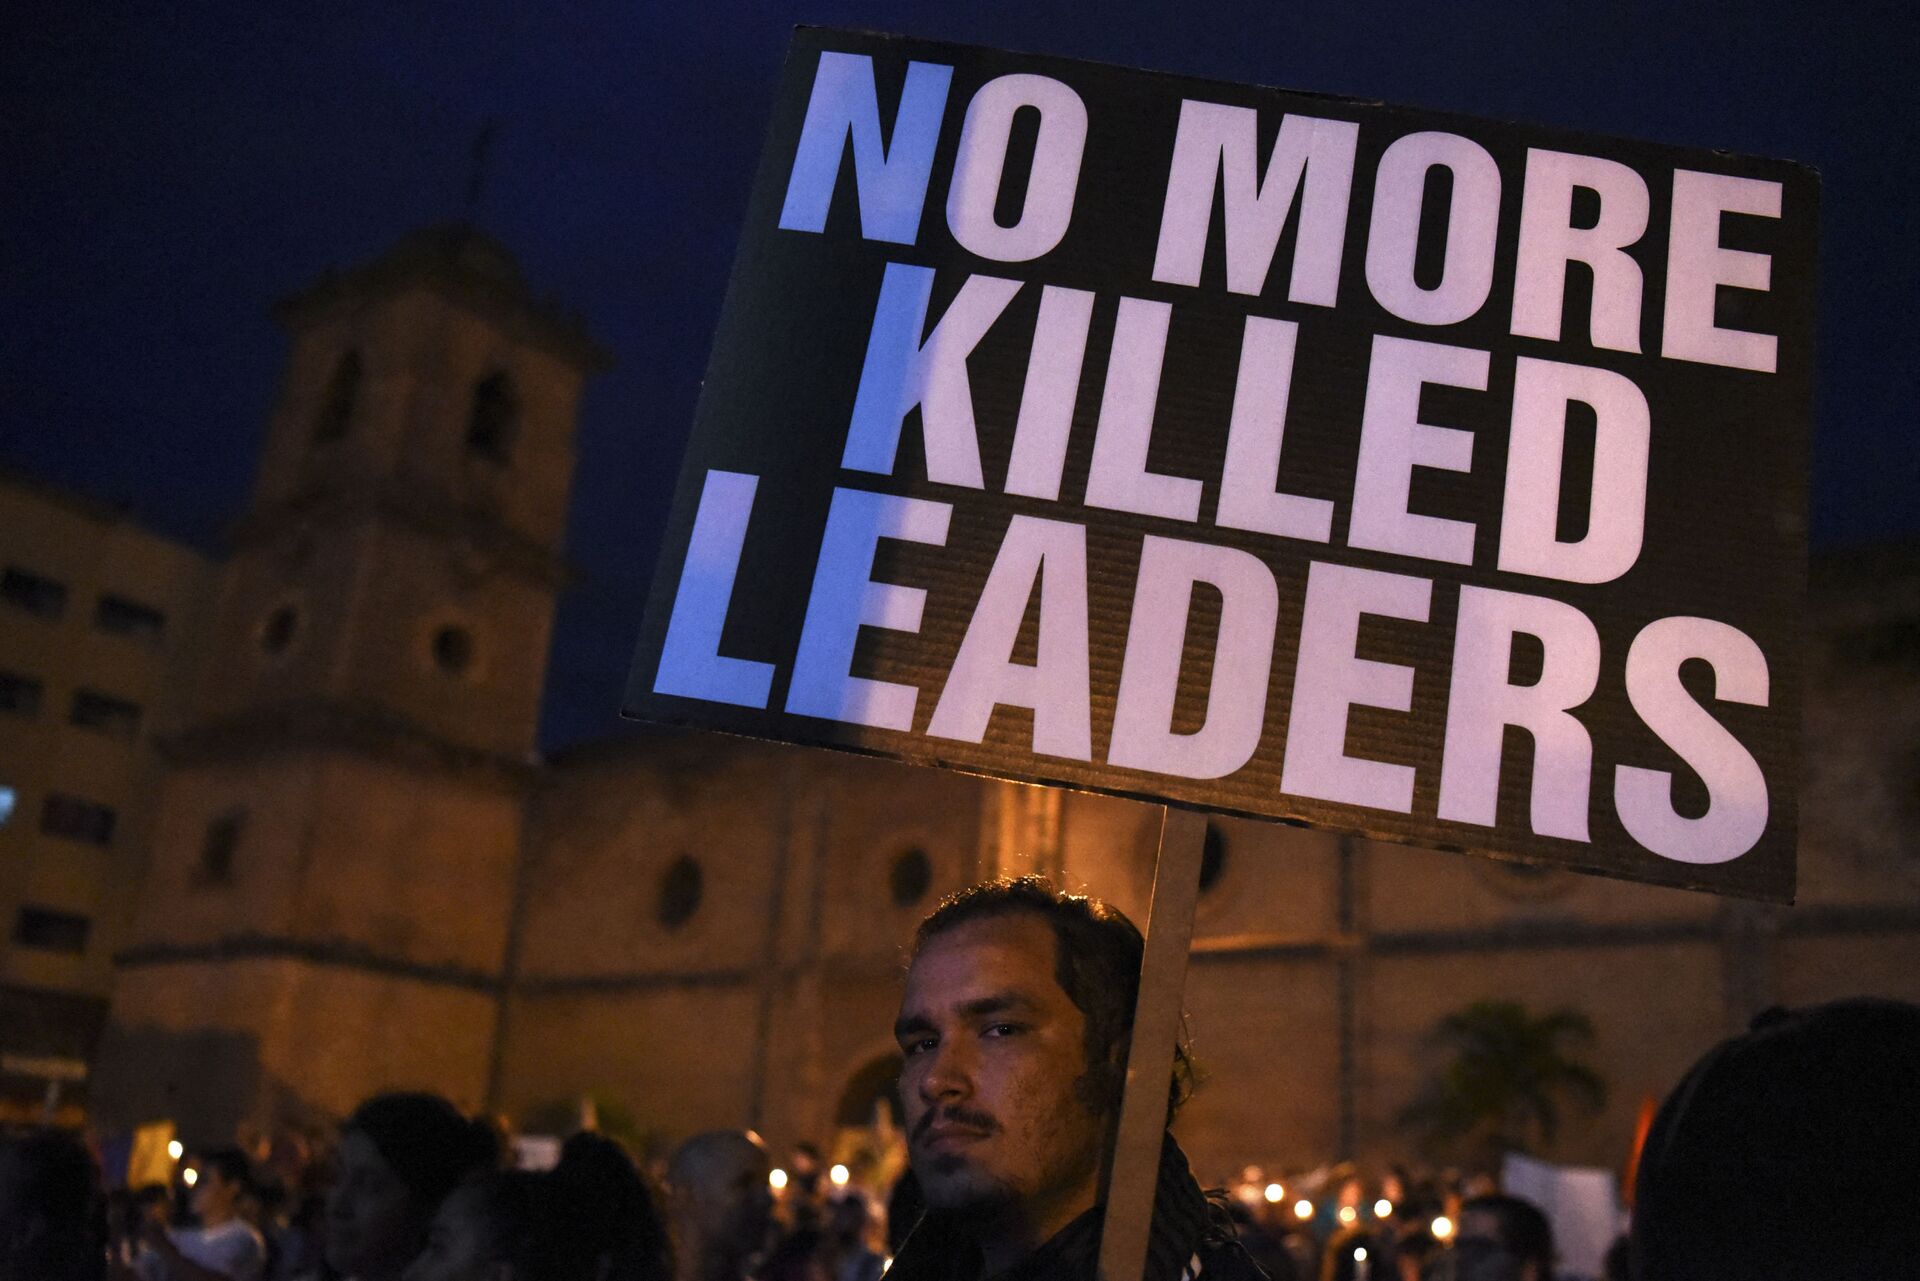 Relatório de ONGs aponta sistematicidade e impunidade de assassinatos de líderes sociais na Colômbia - Sputnik Brasil, 1920, 16.03.2021